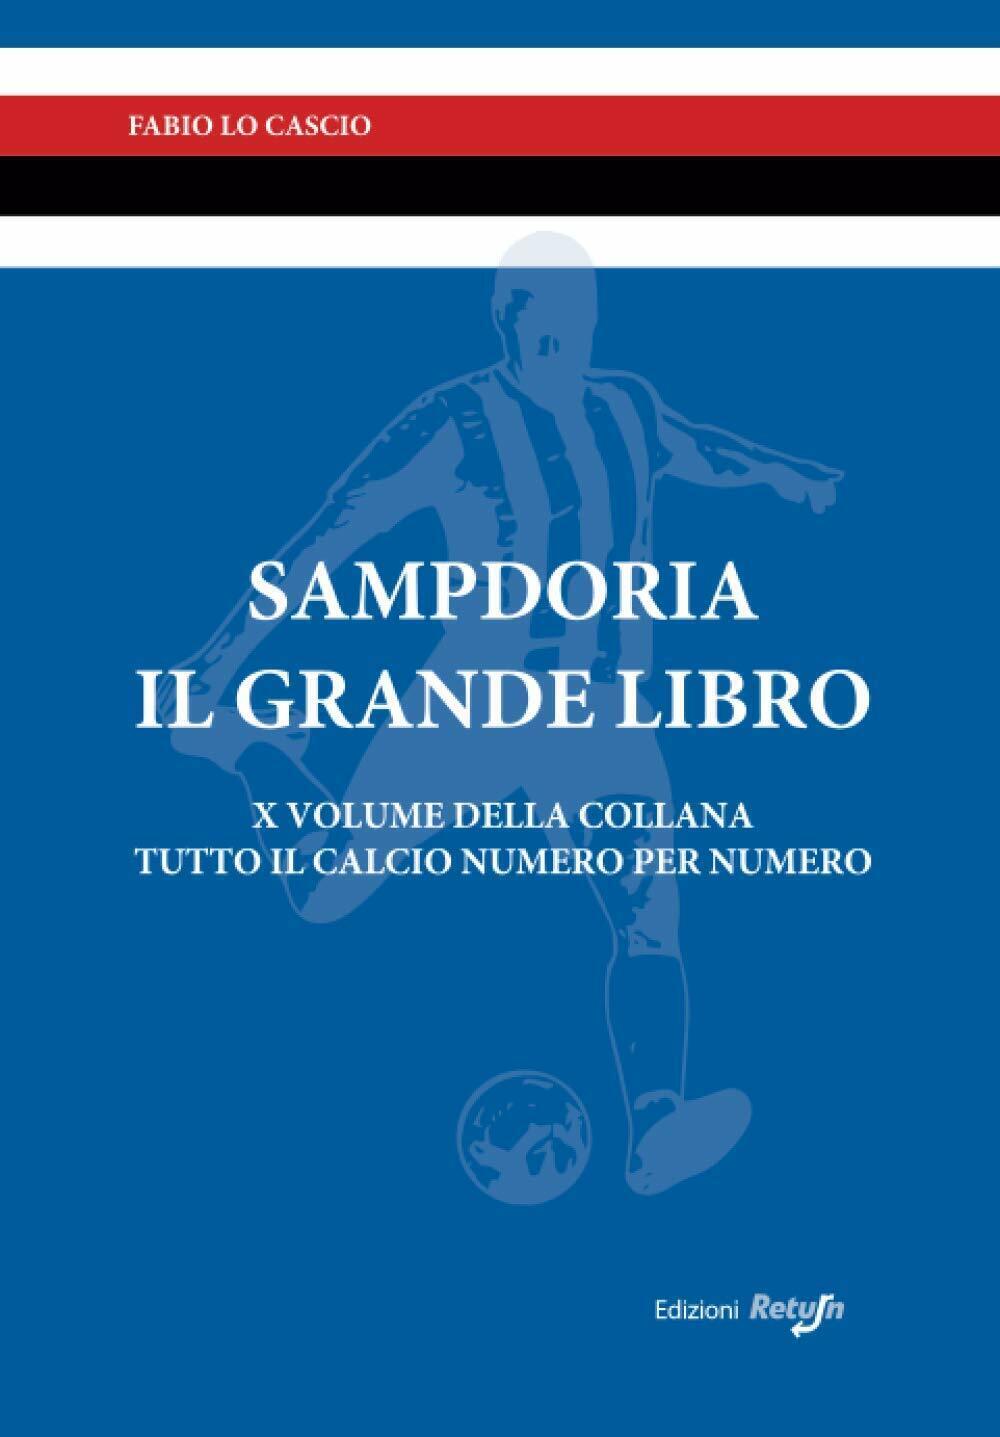 Sampdoria il Grande Libro - Fabio Lo Cascio - Return, 2019 libro usato